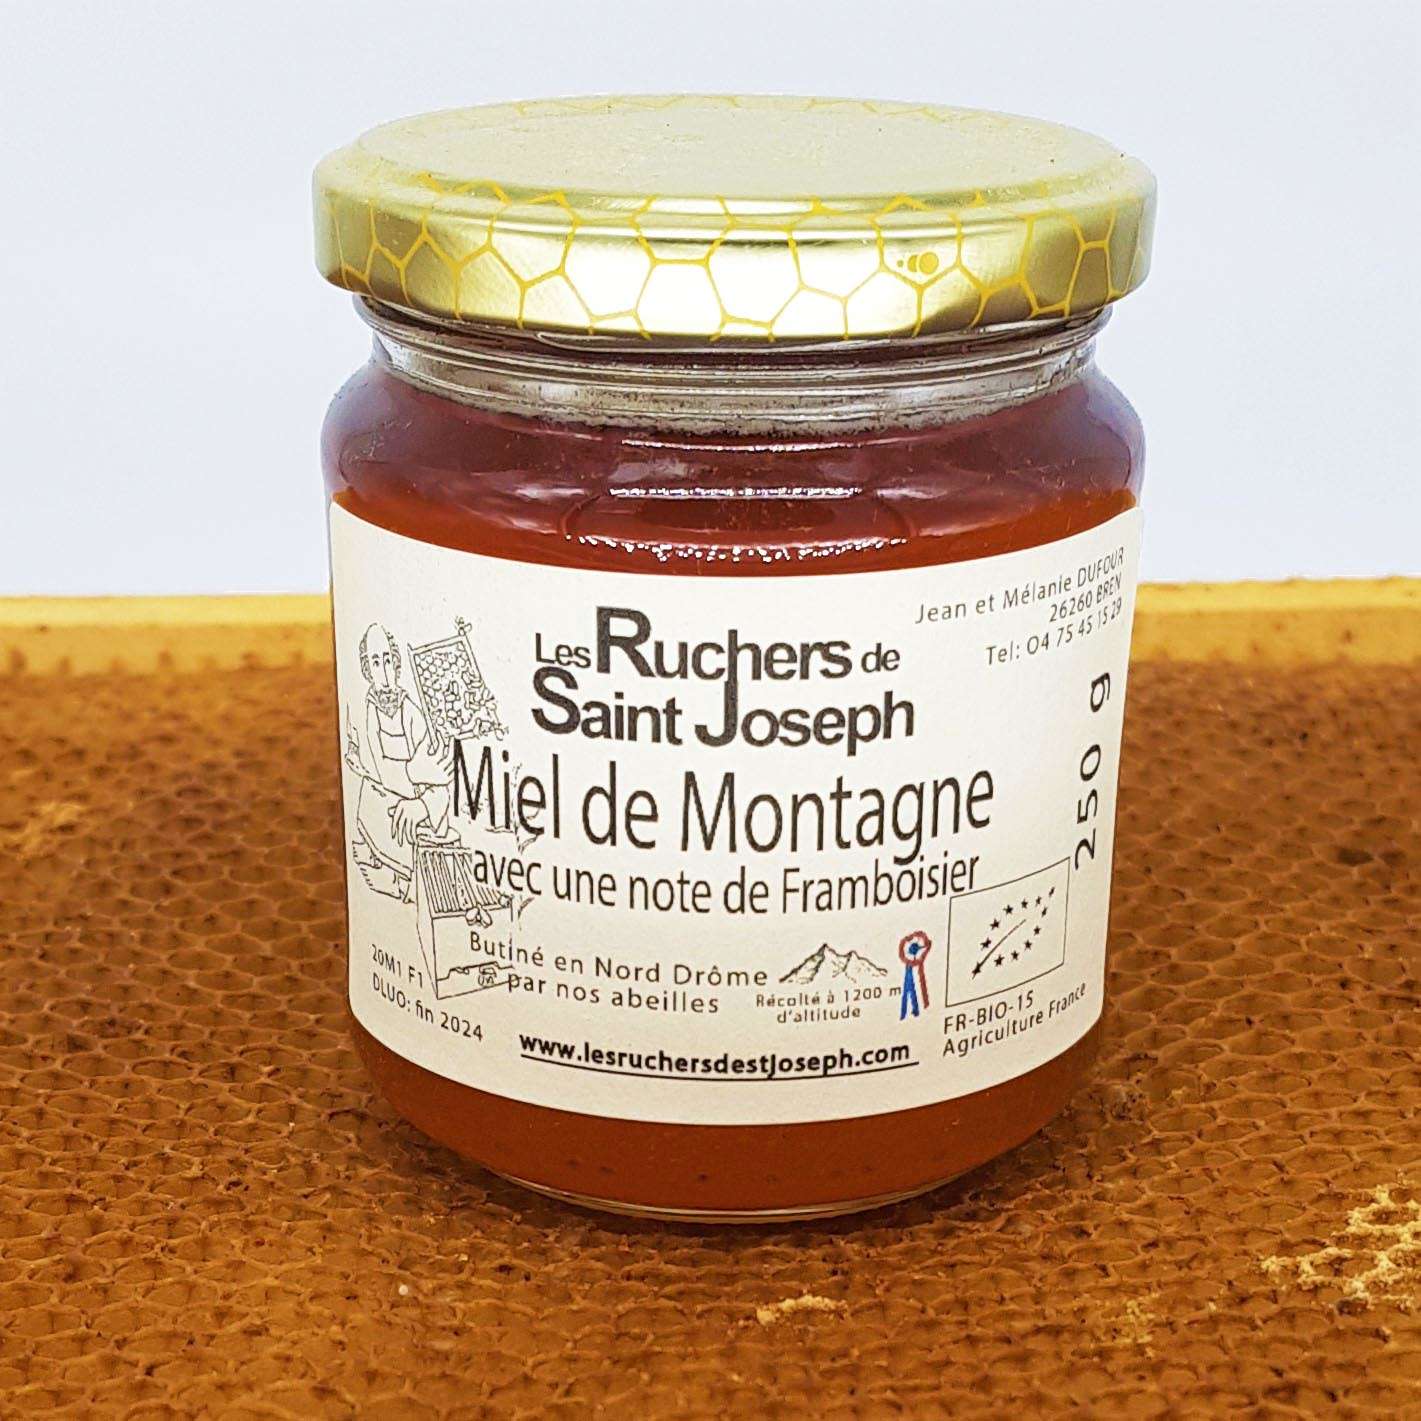 Miel de lavande lavandin récolté en Drôme provençale, fruité et doux